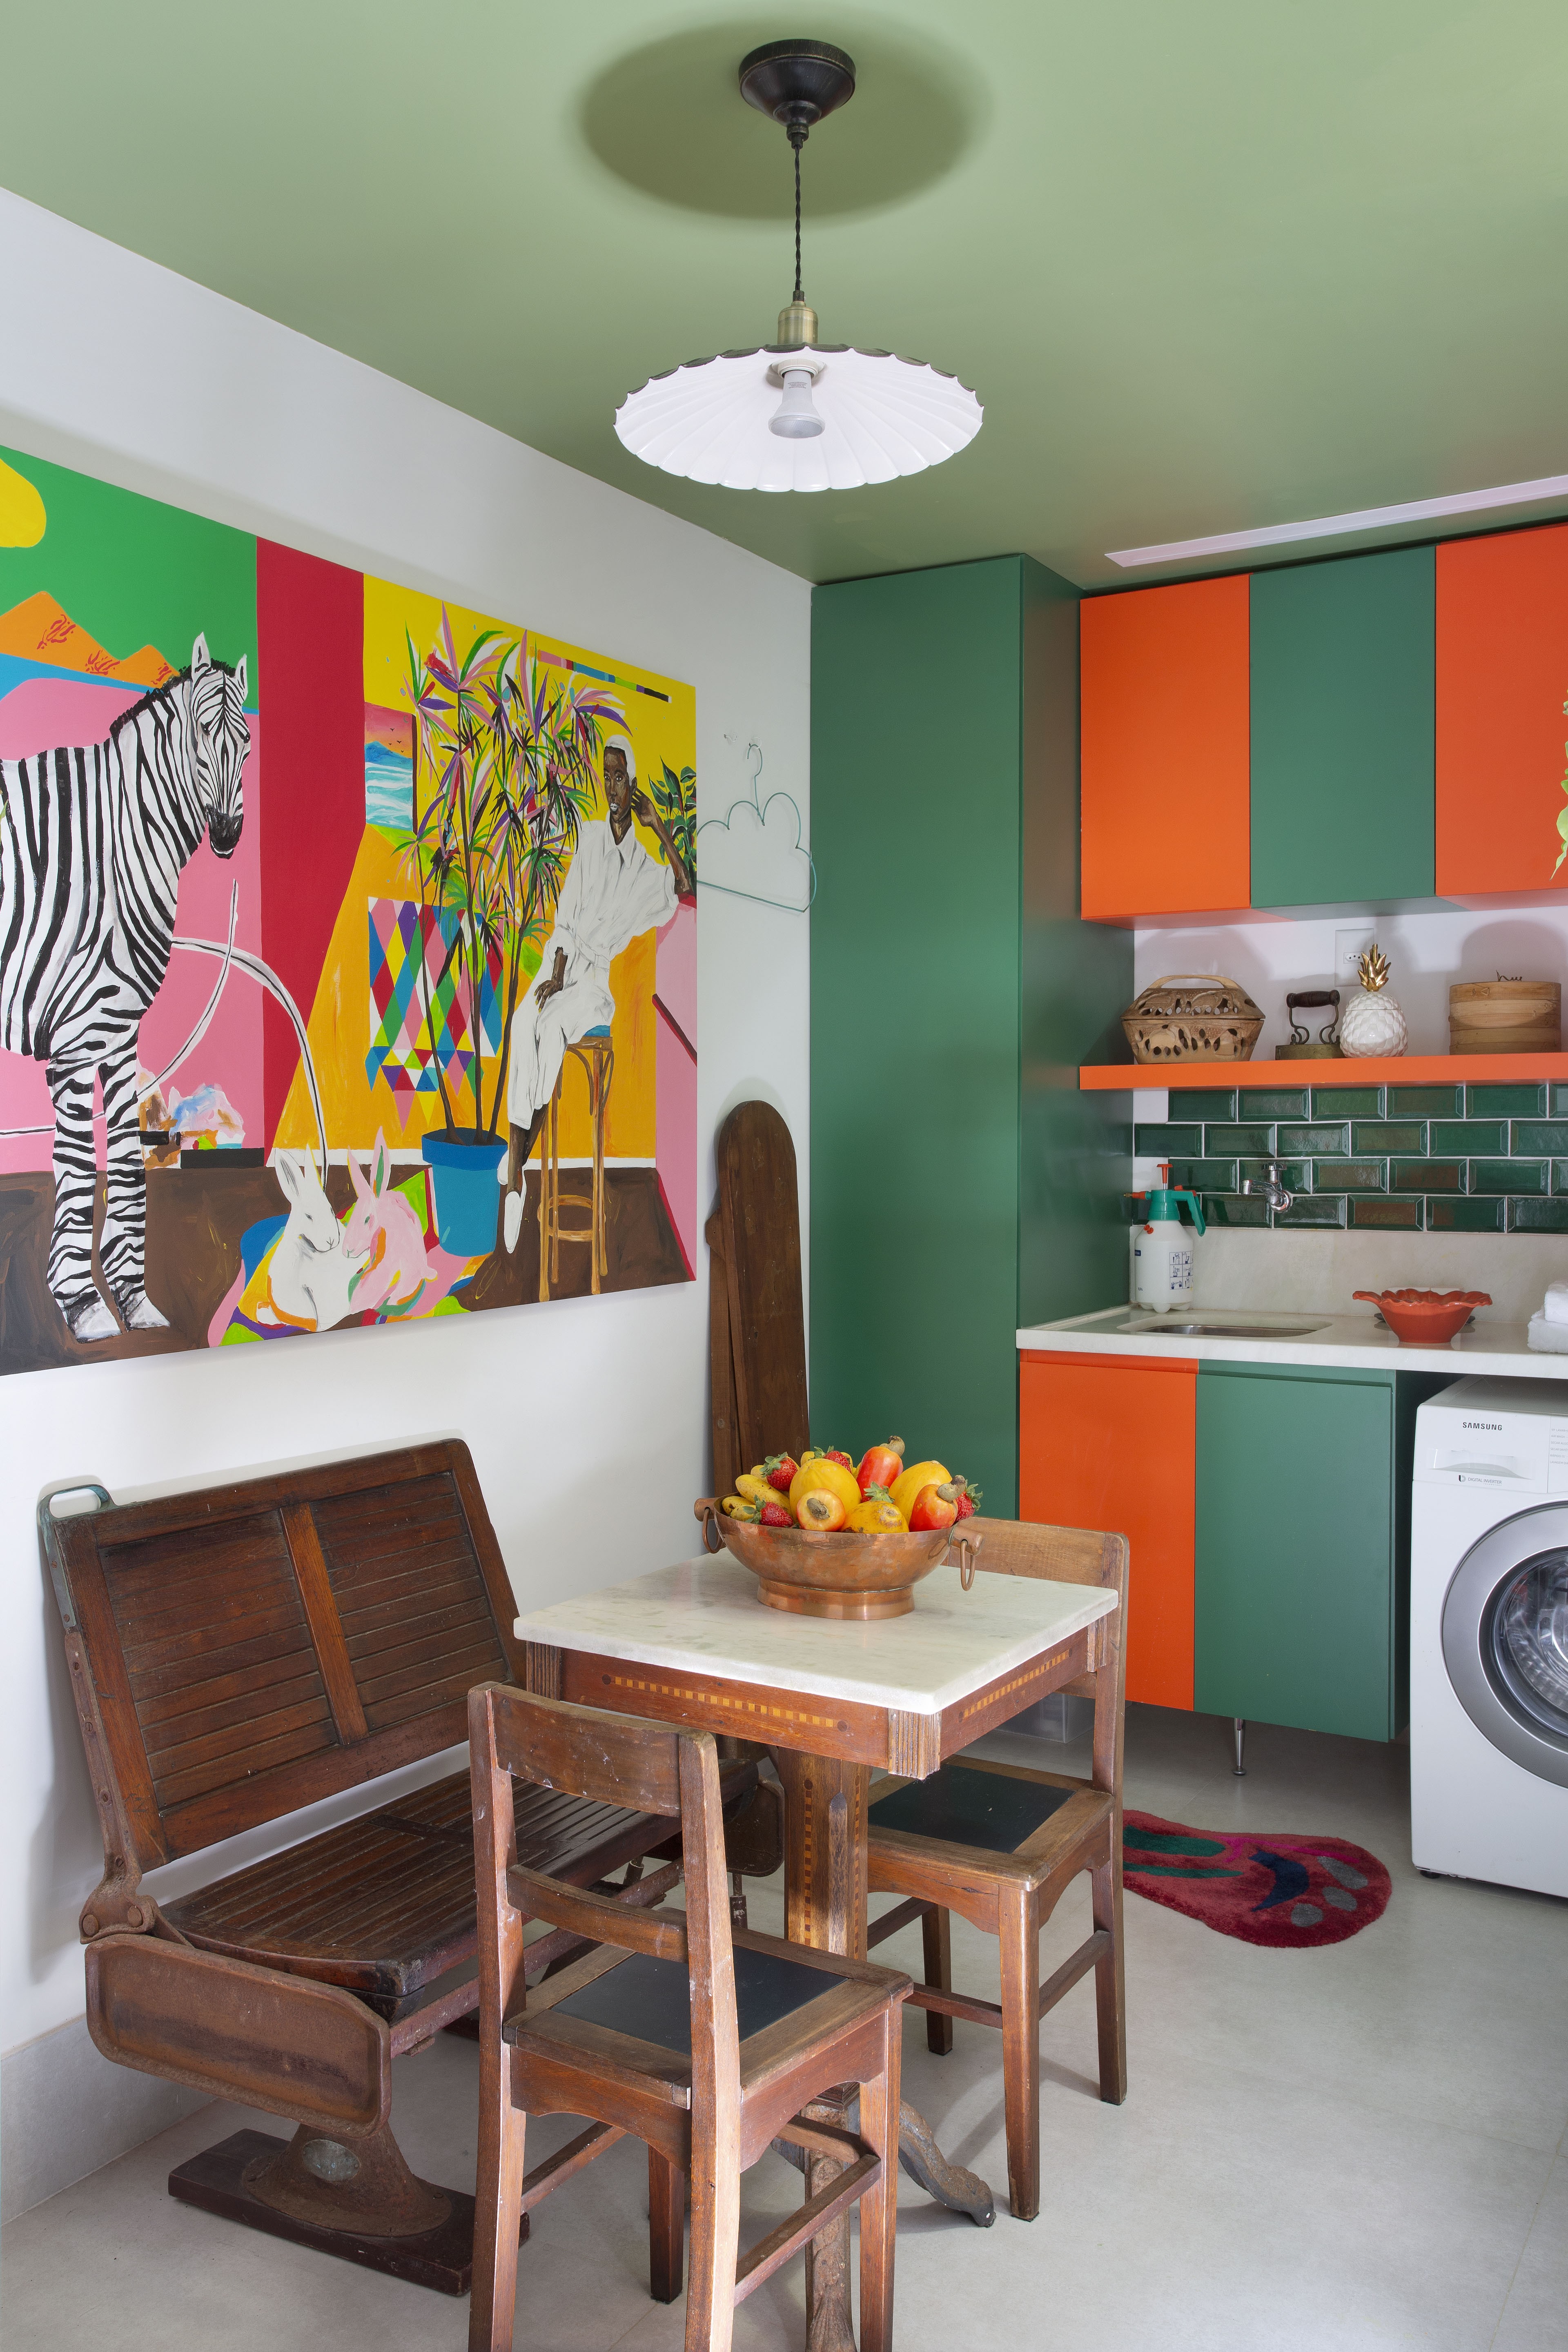 Décor do dia: cozinha tem marcenaria colorida e muita memória afetiva (Foto: Juliano Colodeti/ MCA Estúdio)